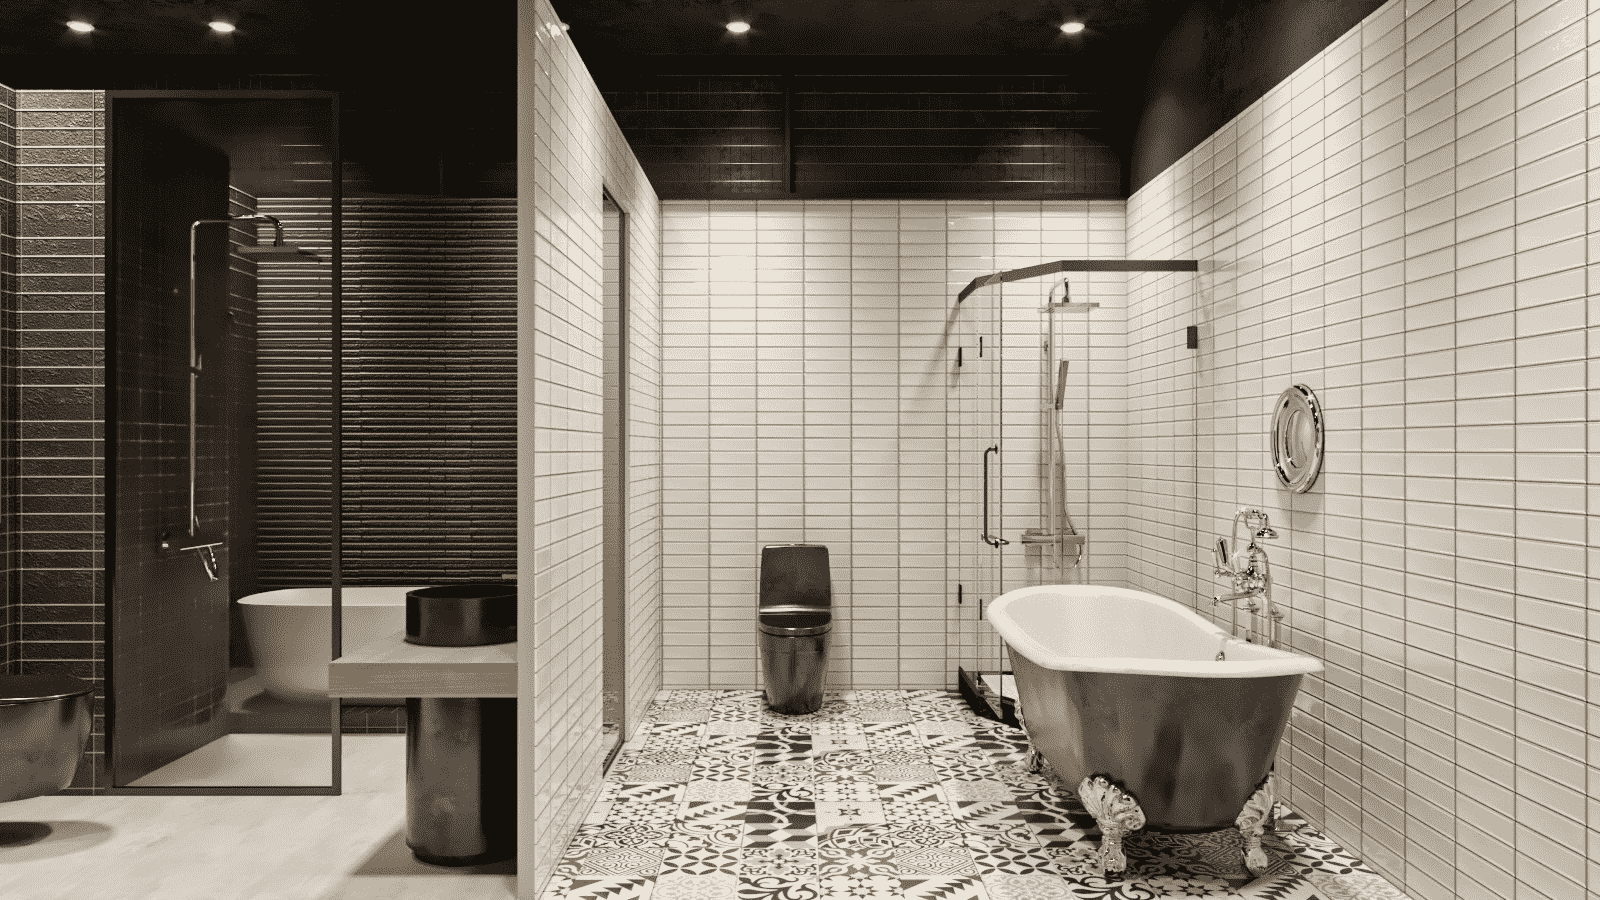 Muốn trải nghiệm thư giãn tuyệt vời sau những giờ làm việc mệt mỏi? Ghé thăm căn phòng vệ sinh hiện đại với bồn tắm tuyệt đẹp. Cùng giữ gìn sức khỏe và sắc đẹp sinh lực tràn đầy với không gian thật hoàn hảo.